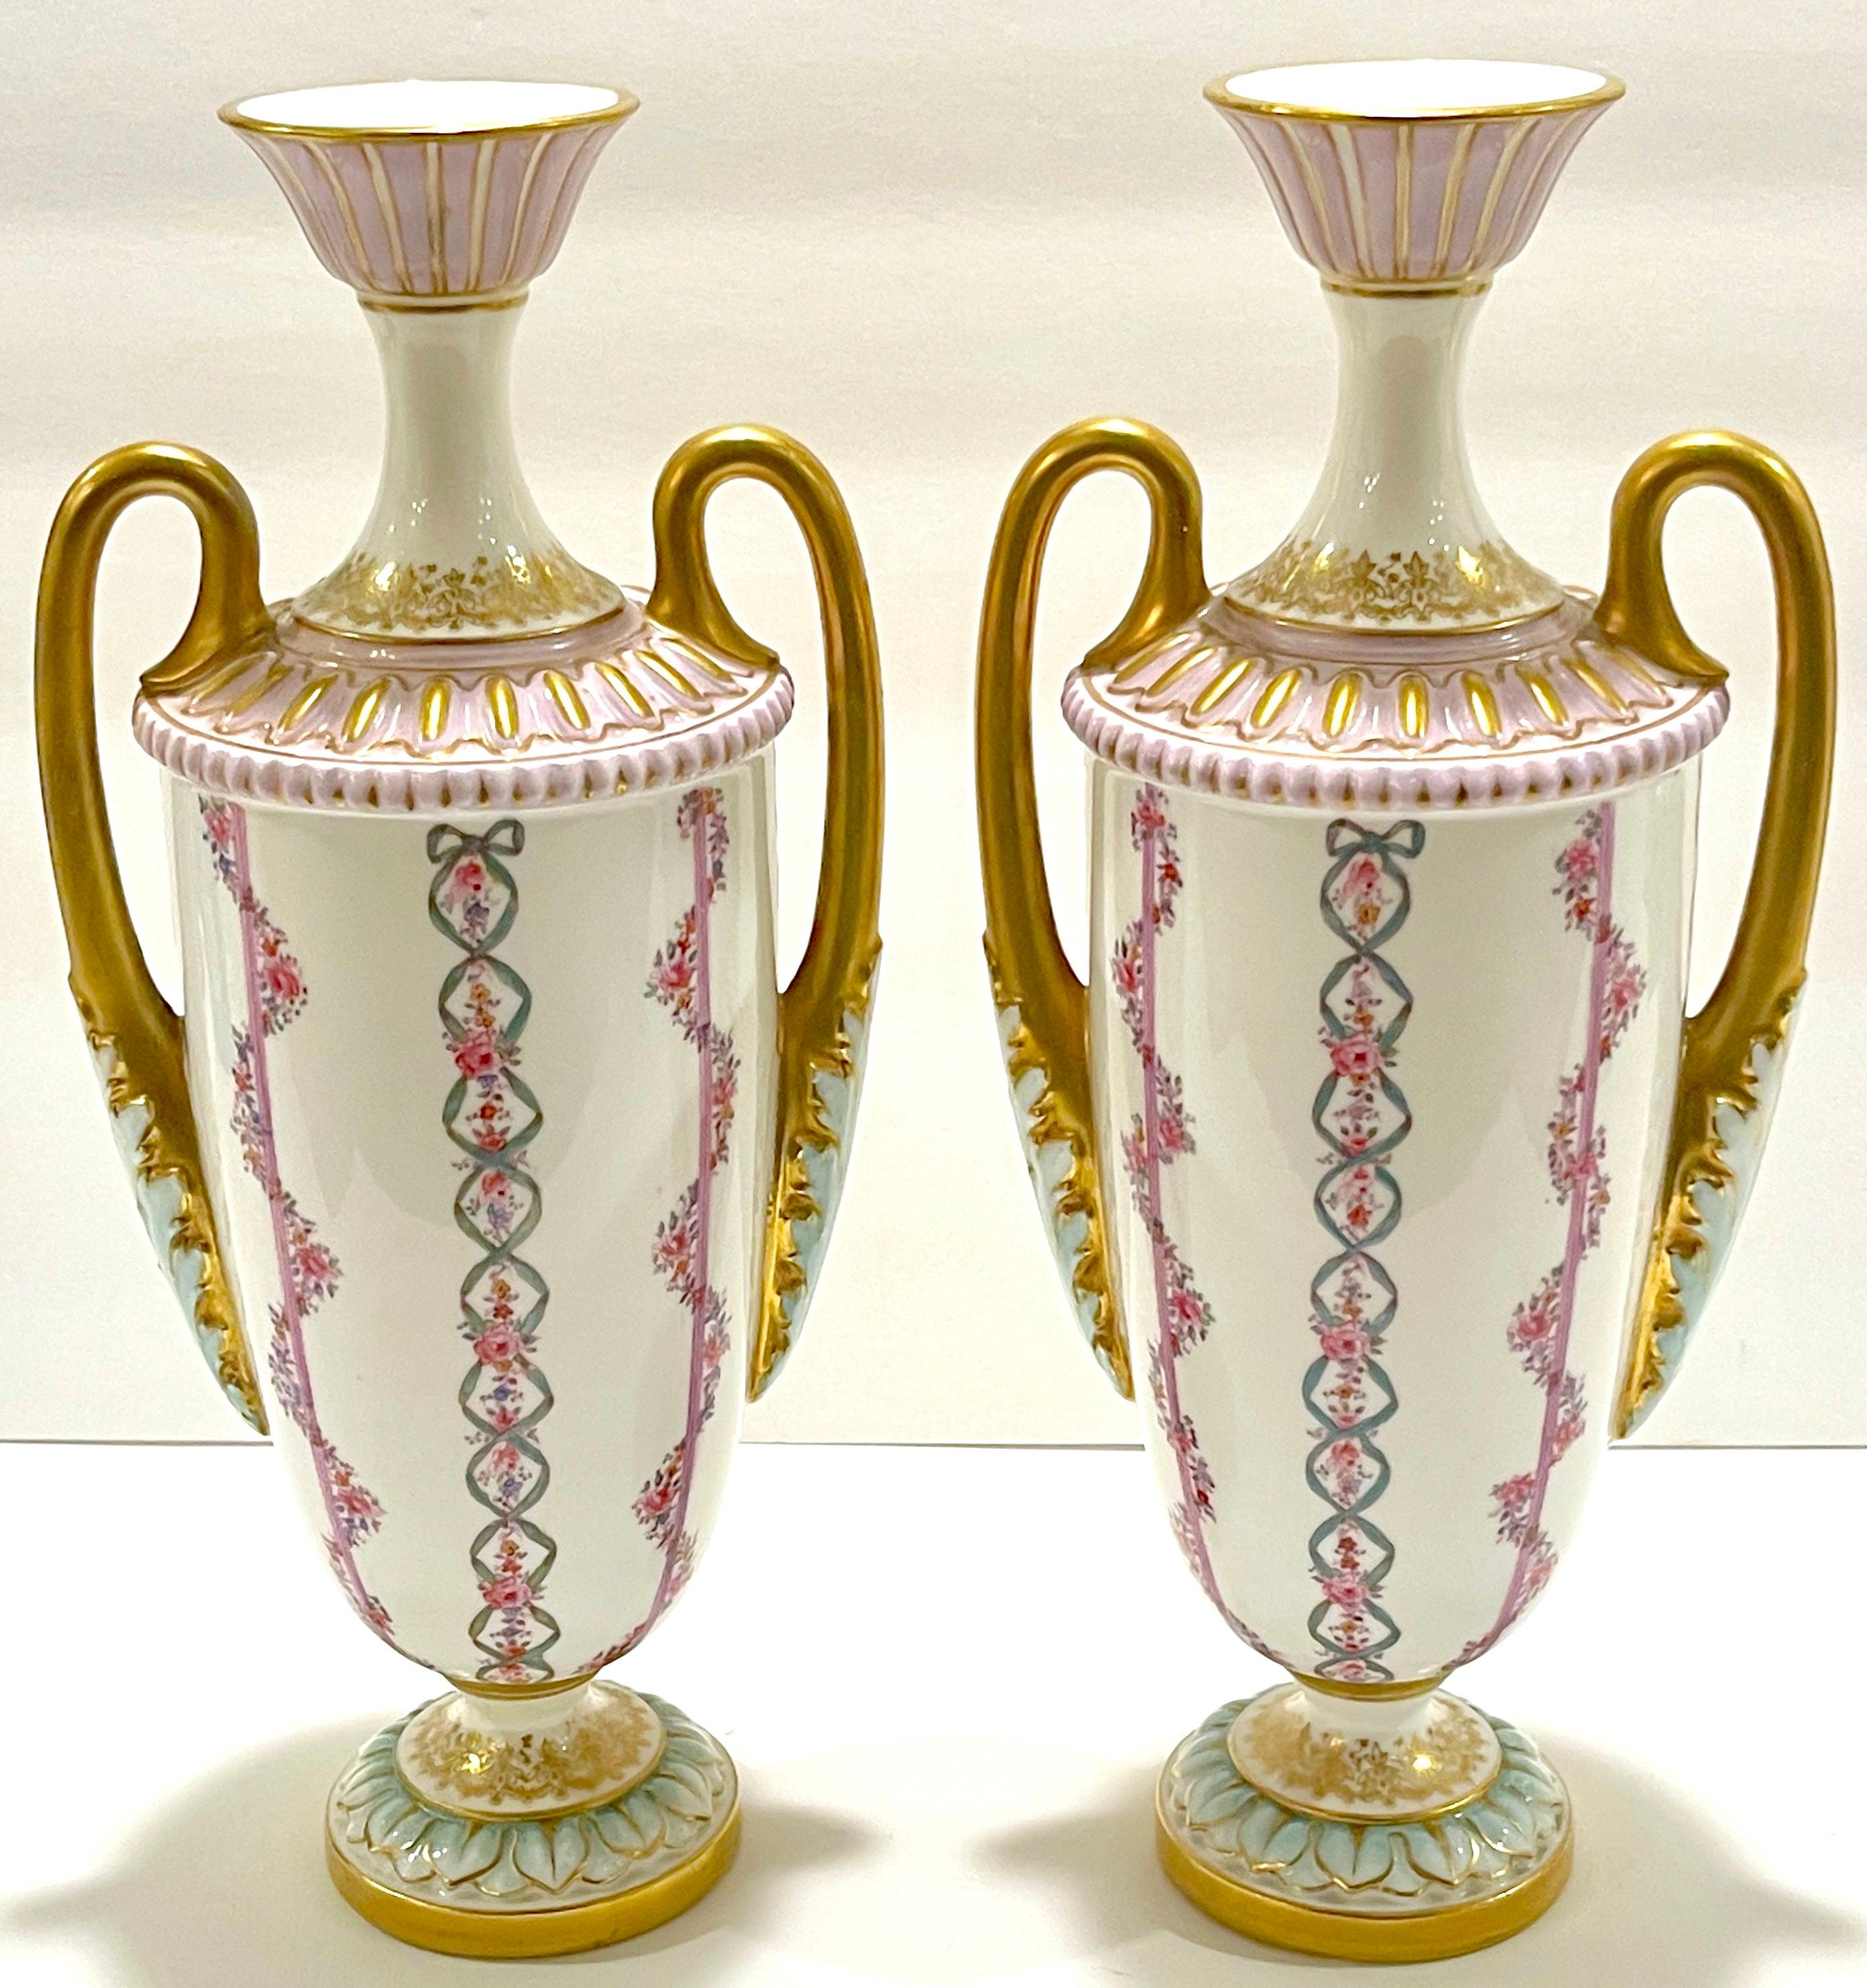 Paar Royal Worcester Vasen im neoklassizistischen Stil, England, 1901.
Datum mit grünem Rückstempel mit fünf Punkten links und rechts.
Bleifreies Glas - Englische Registriermarke